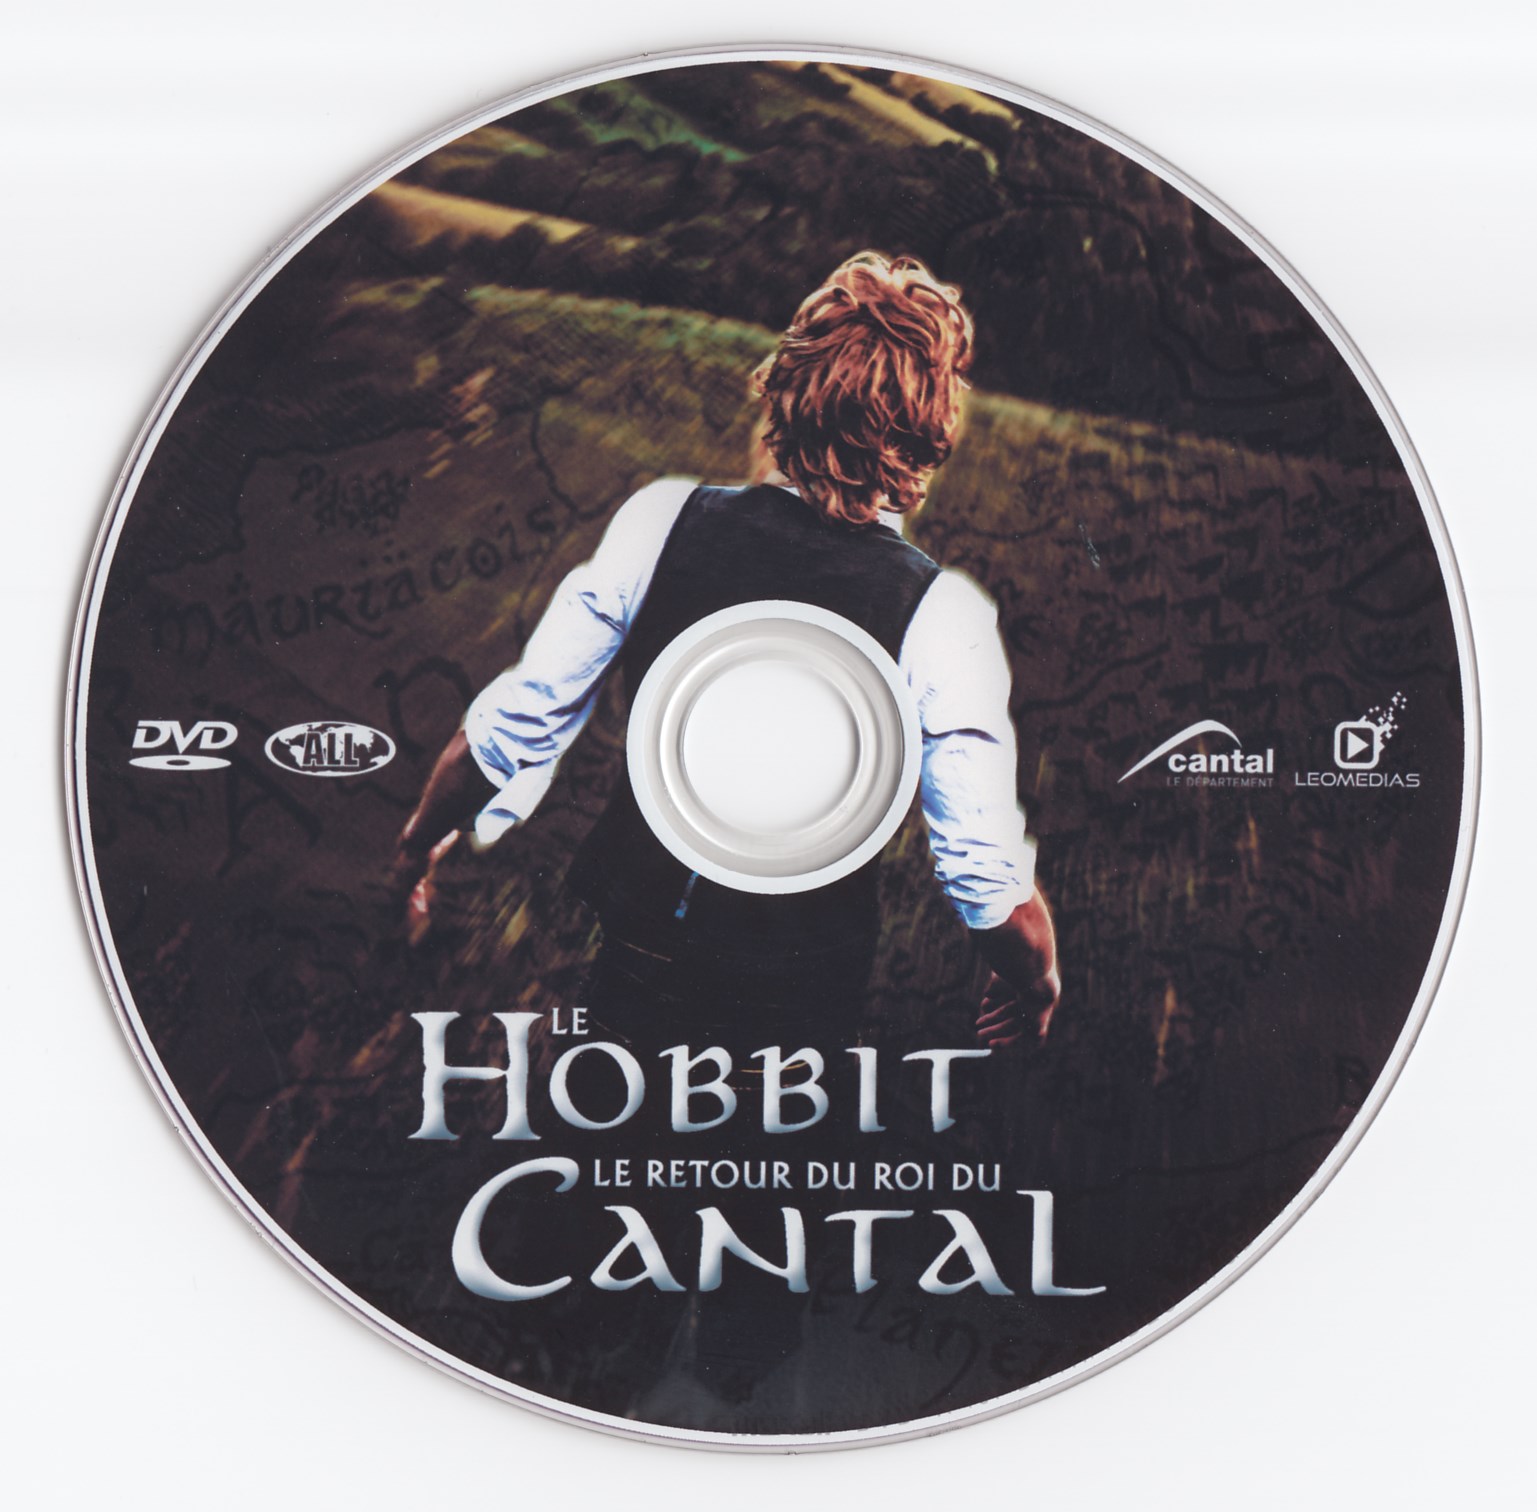 Le Hobbit le retour du Roi du Cantal